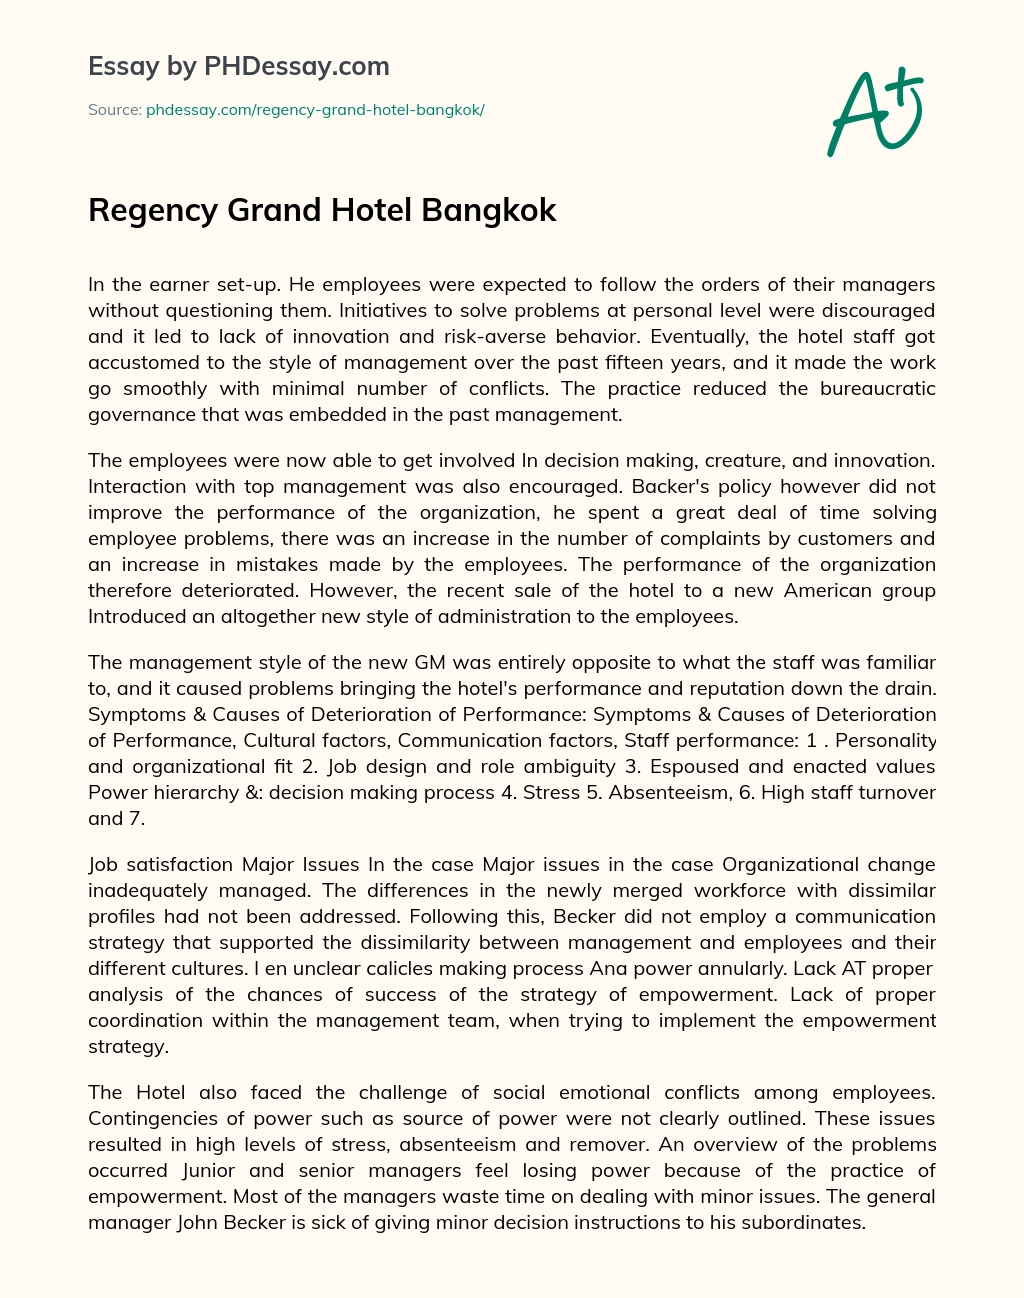 Regency Grand Hotel Bangkok essay